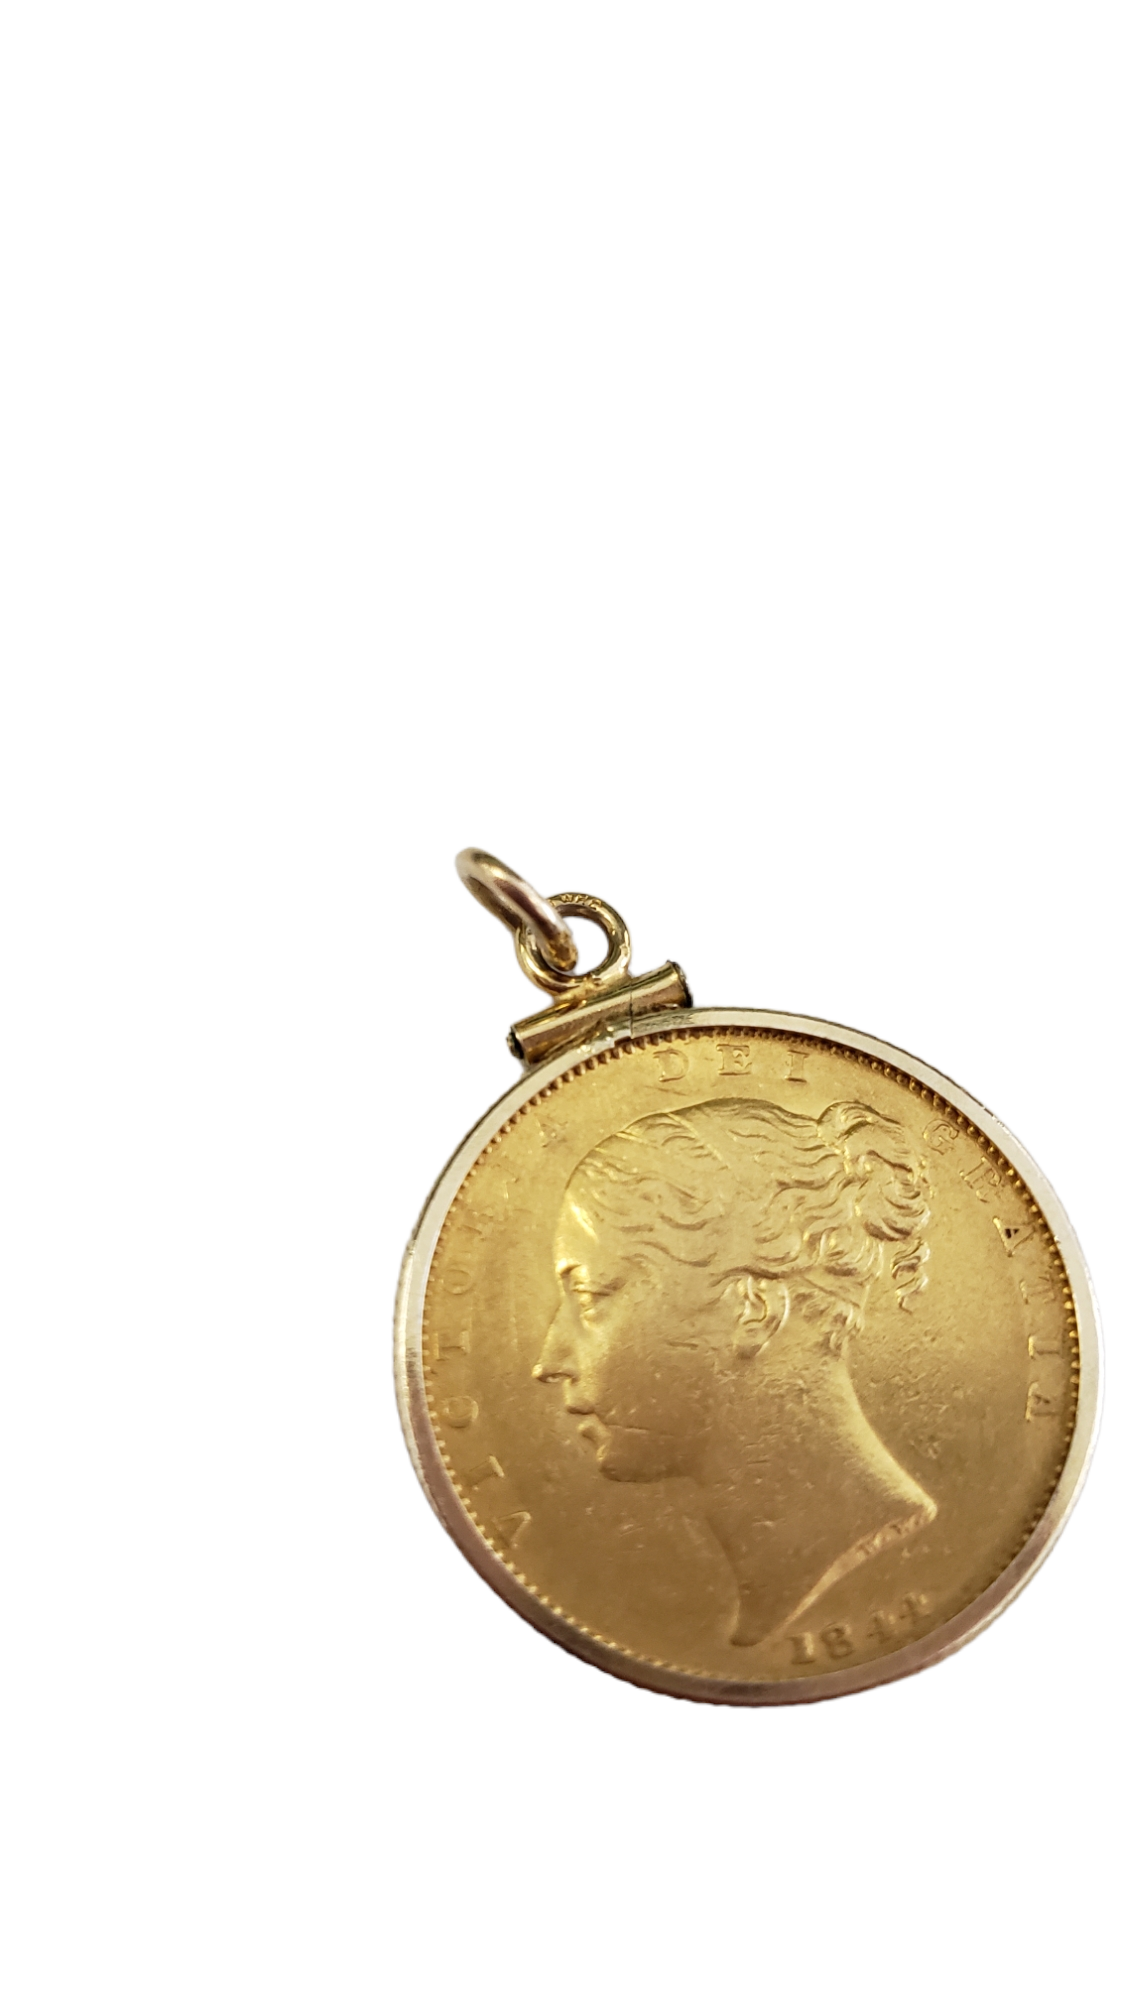 Victoria Dei Gratia 1844 22K Yellow Gold Coin in 14K Yellow Gold Case Pendant